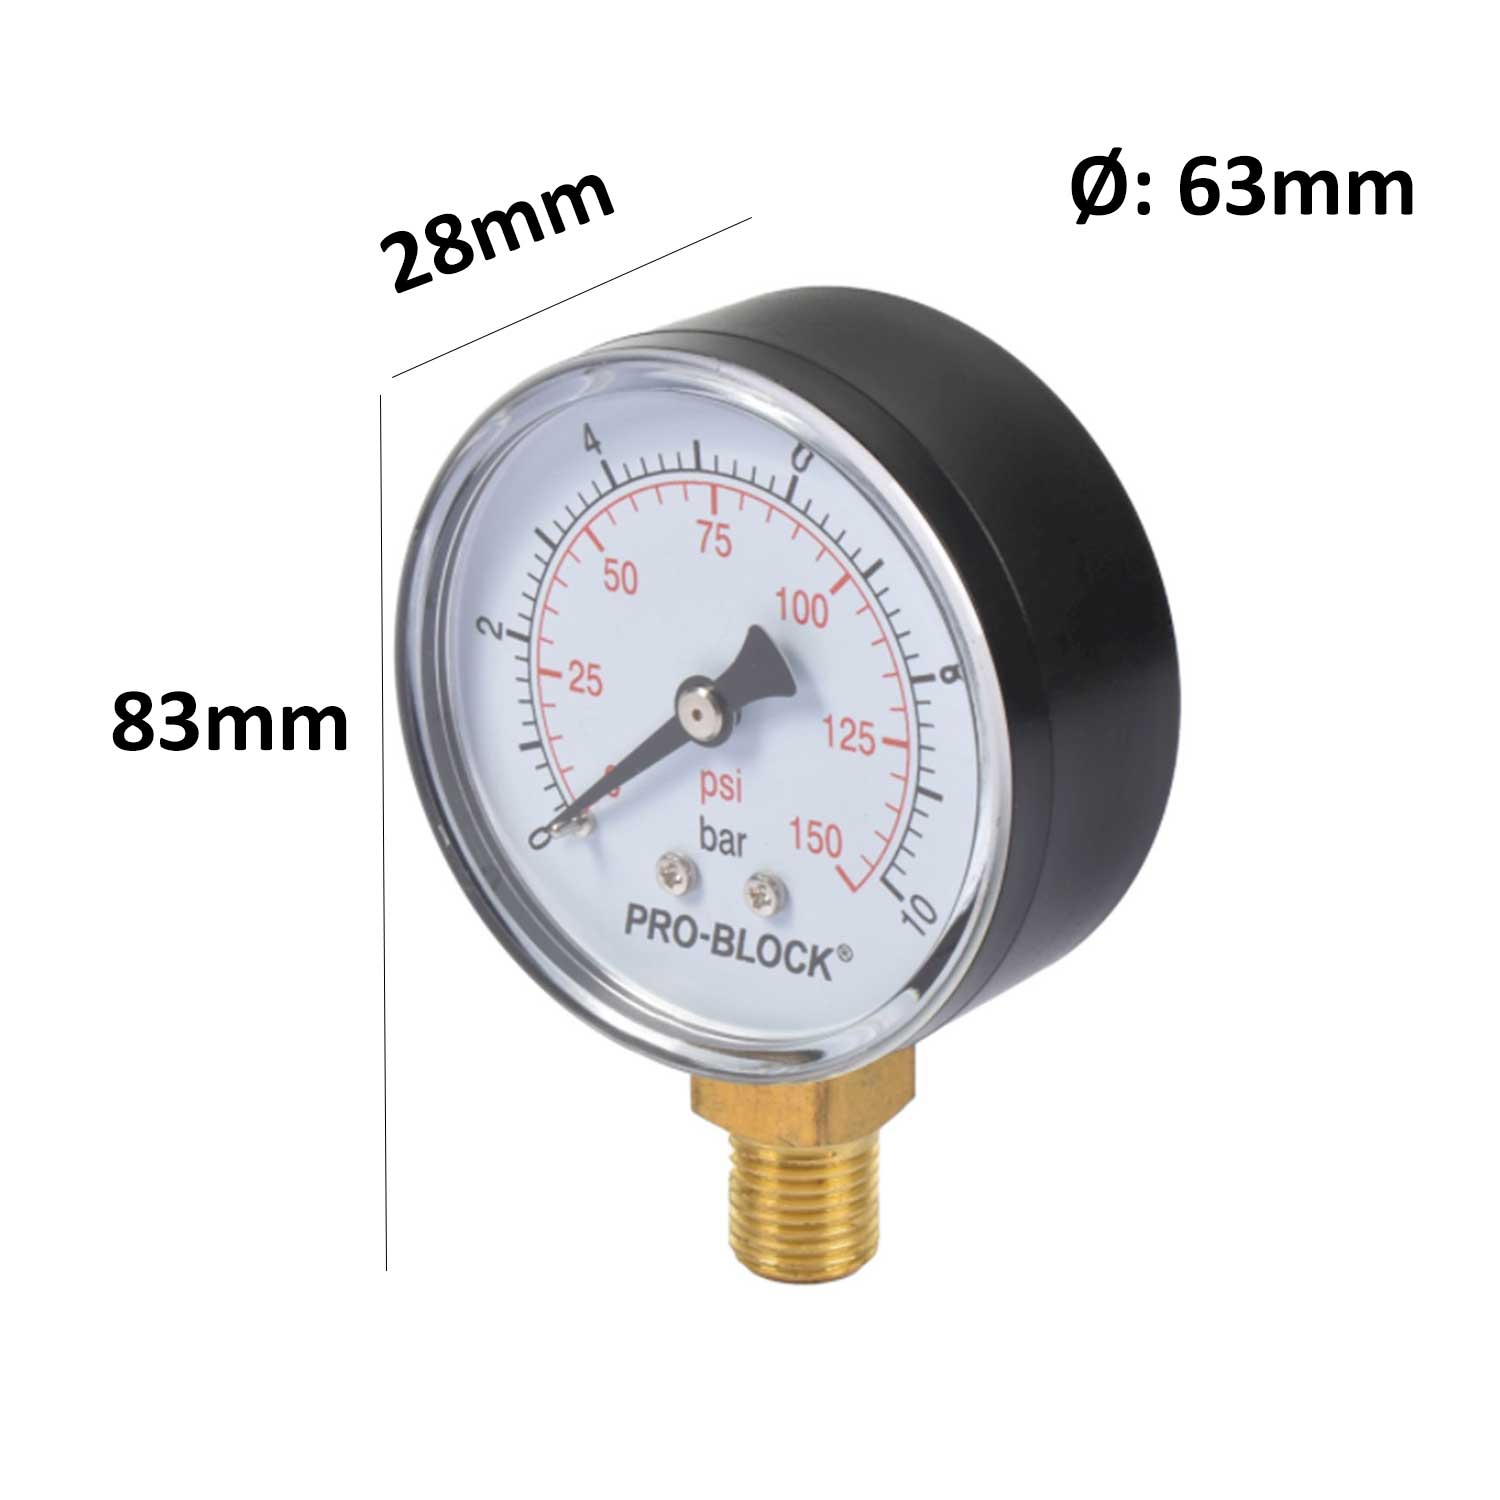 0-60psi,0-4bar Strumento di misurazione manometro meccanico manometro 1/8inch BSPT Connessione inferiore per misurazione aria olio acqua